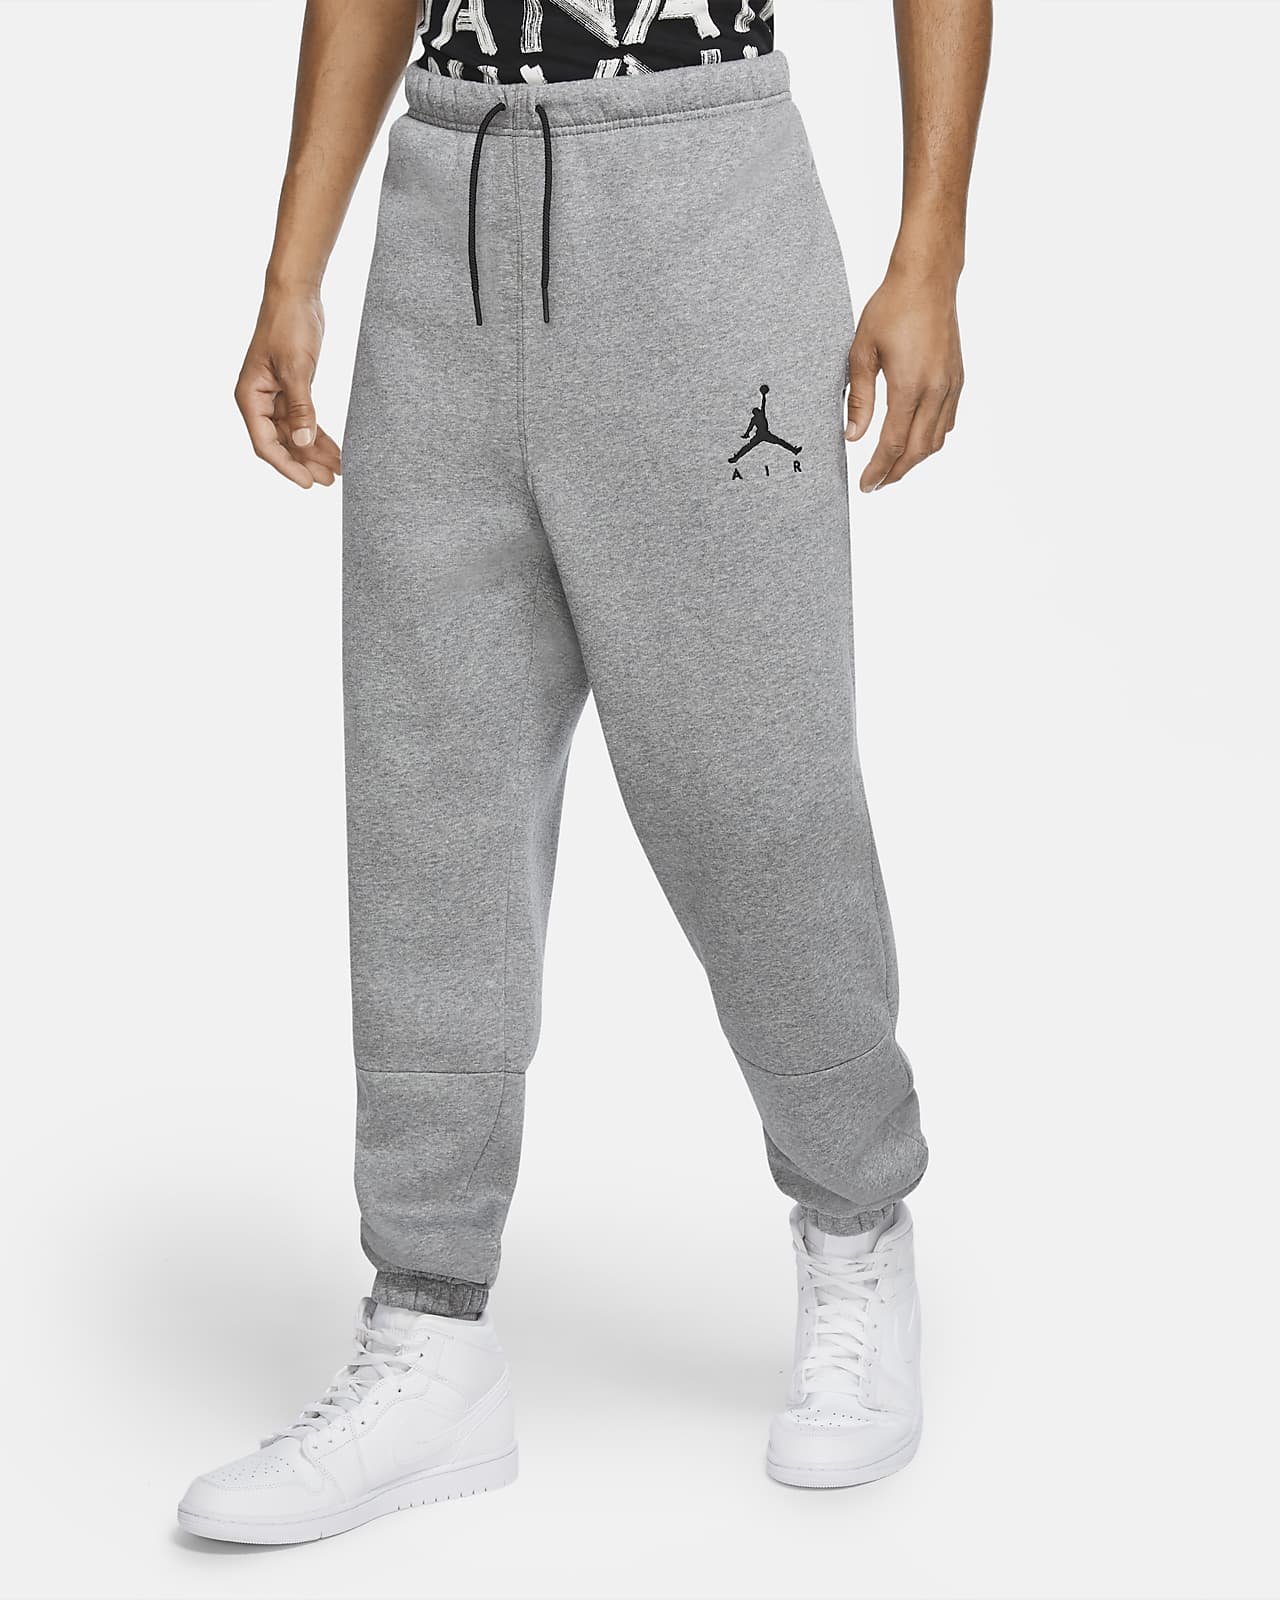 Fleece Trousers. Nike NL